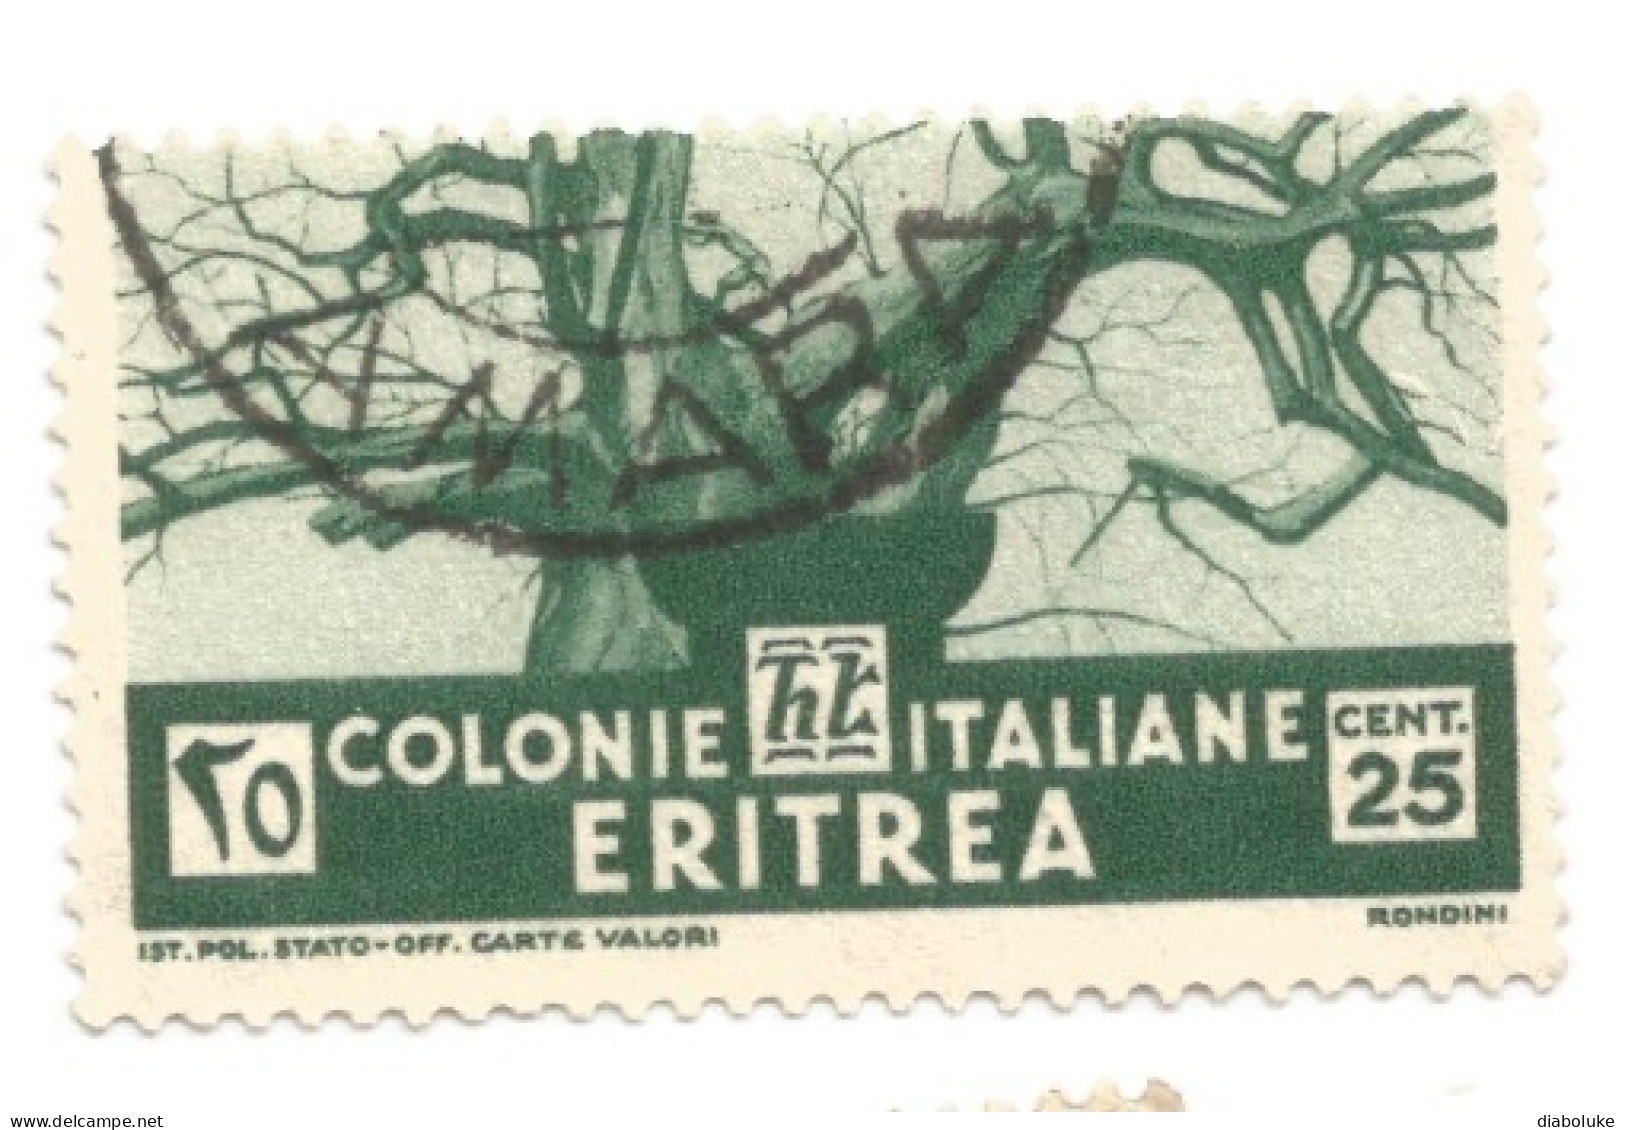 (COLONIE E POSSEDIMENTI) 1933, ERITREA, SOGGETTI AFRICANI - 18 francobolli usati